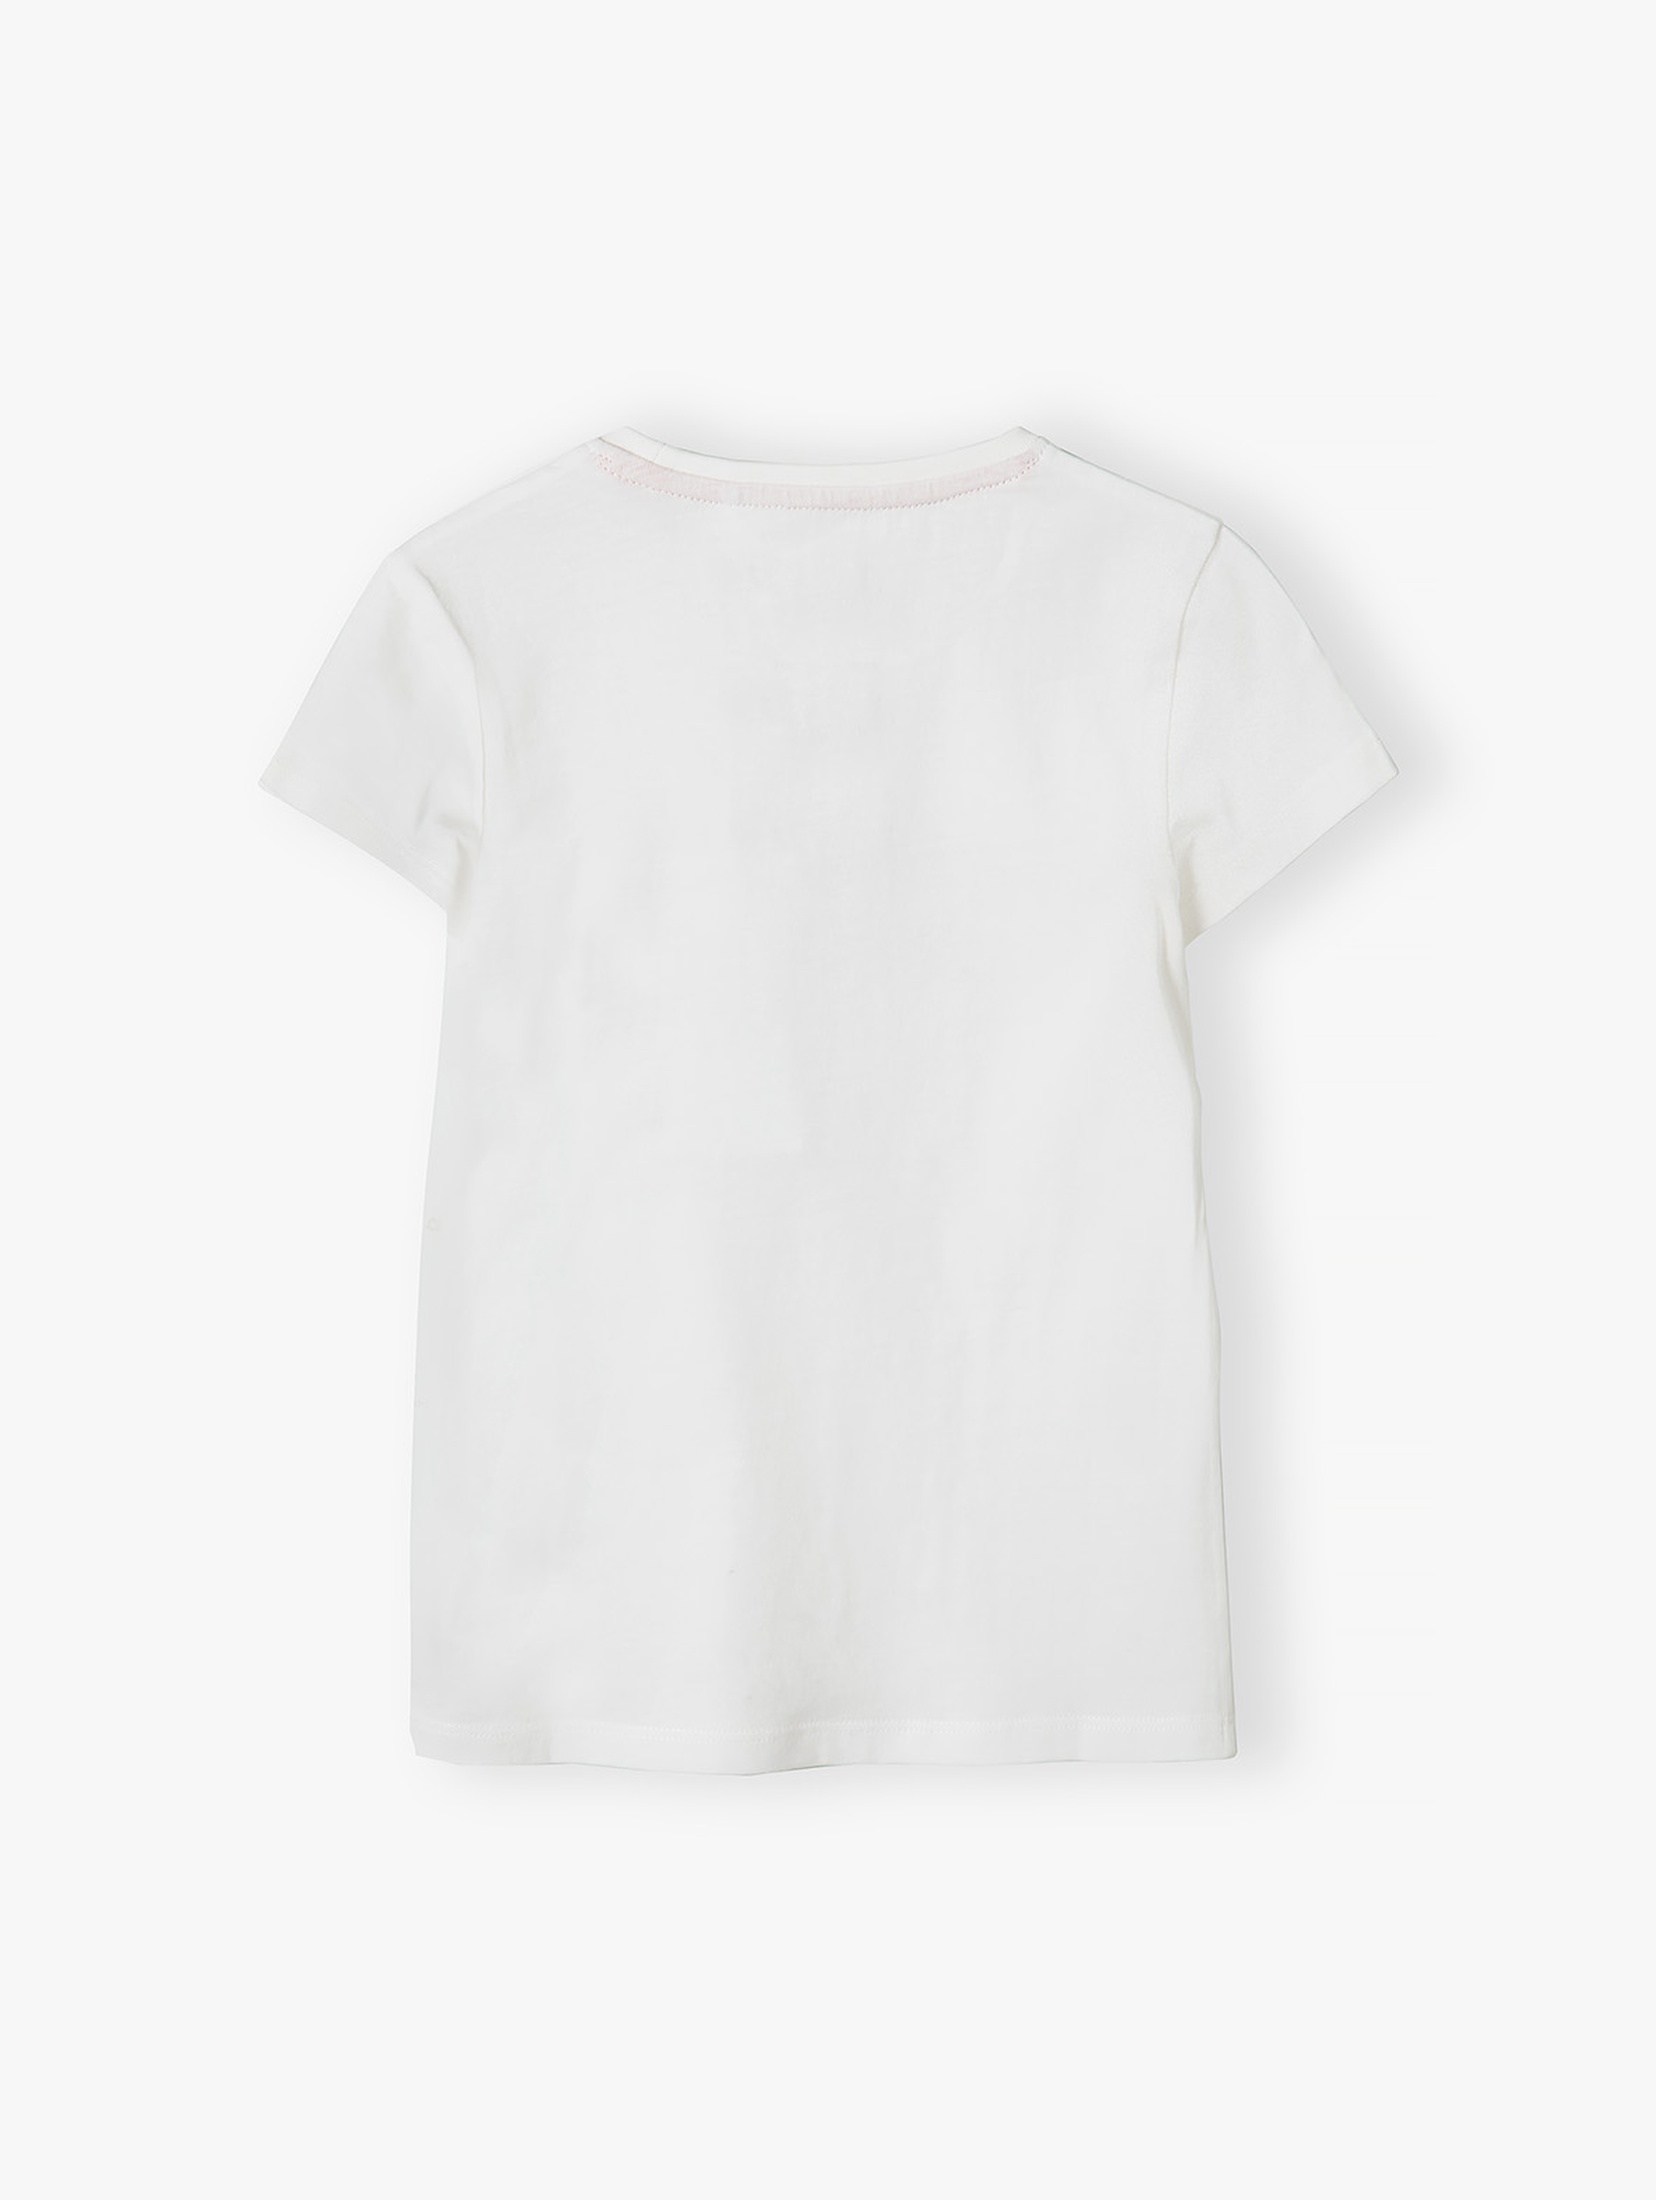 Biały t-shirt bawełniany dla dziewczynki z napisem Najlepsza siostra